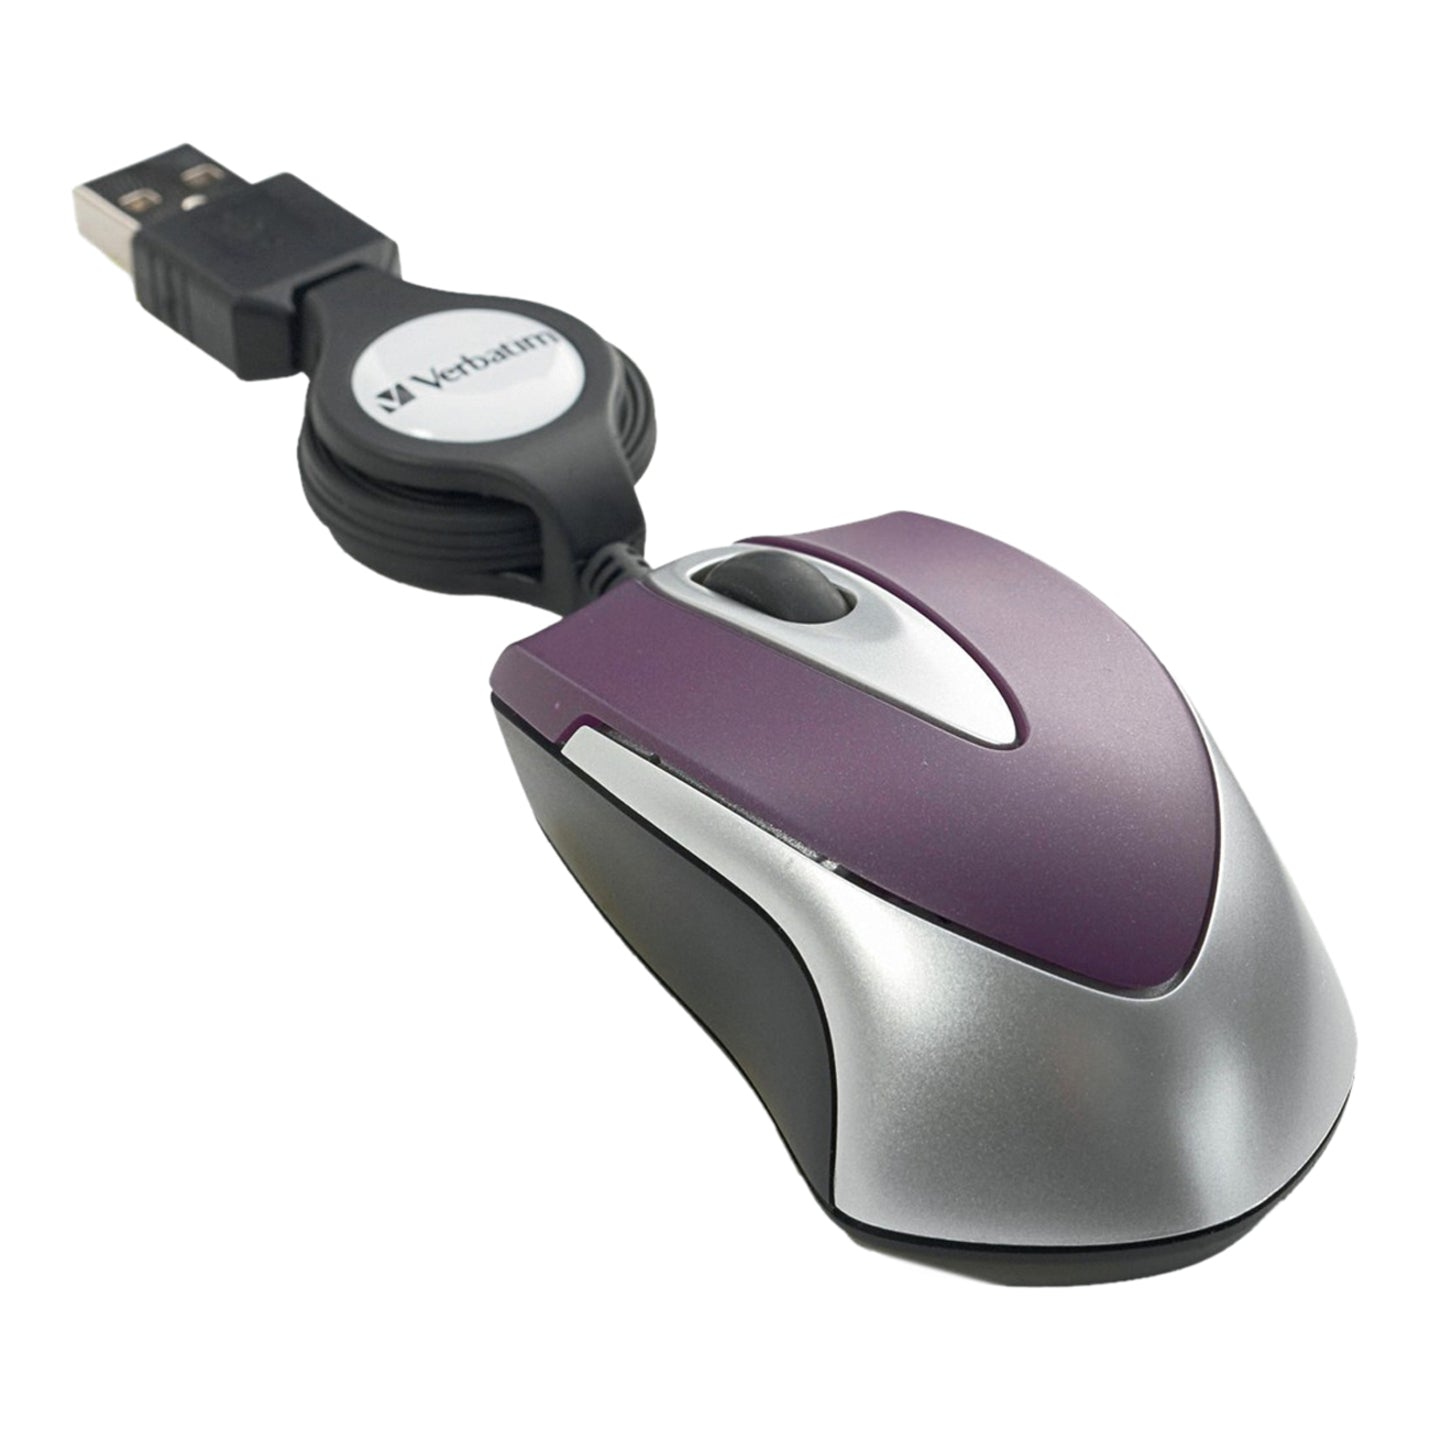 Verbatim ratón óptico de viaje 97253 morado USB 2.0 1000 dpi. Marca: Verbatim.